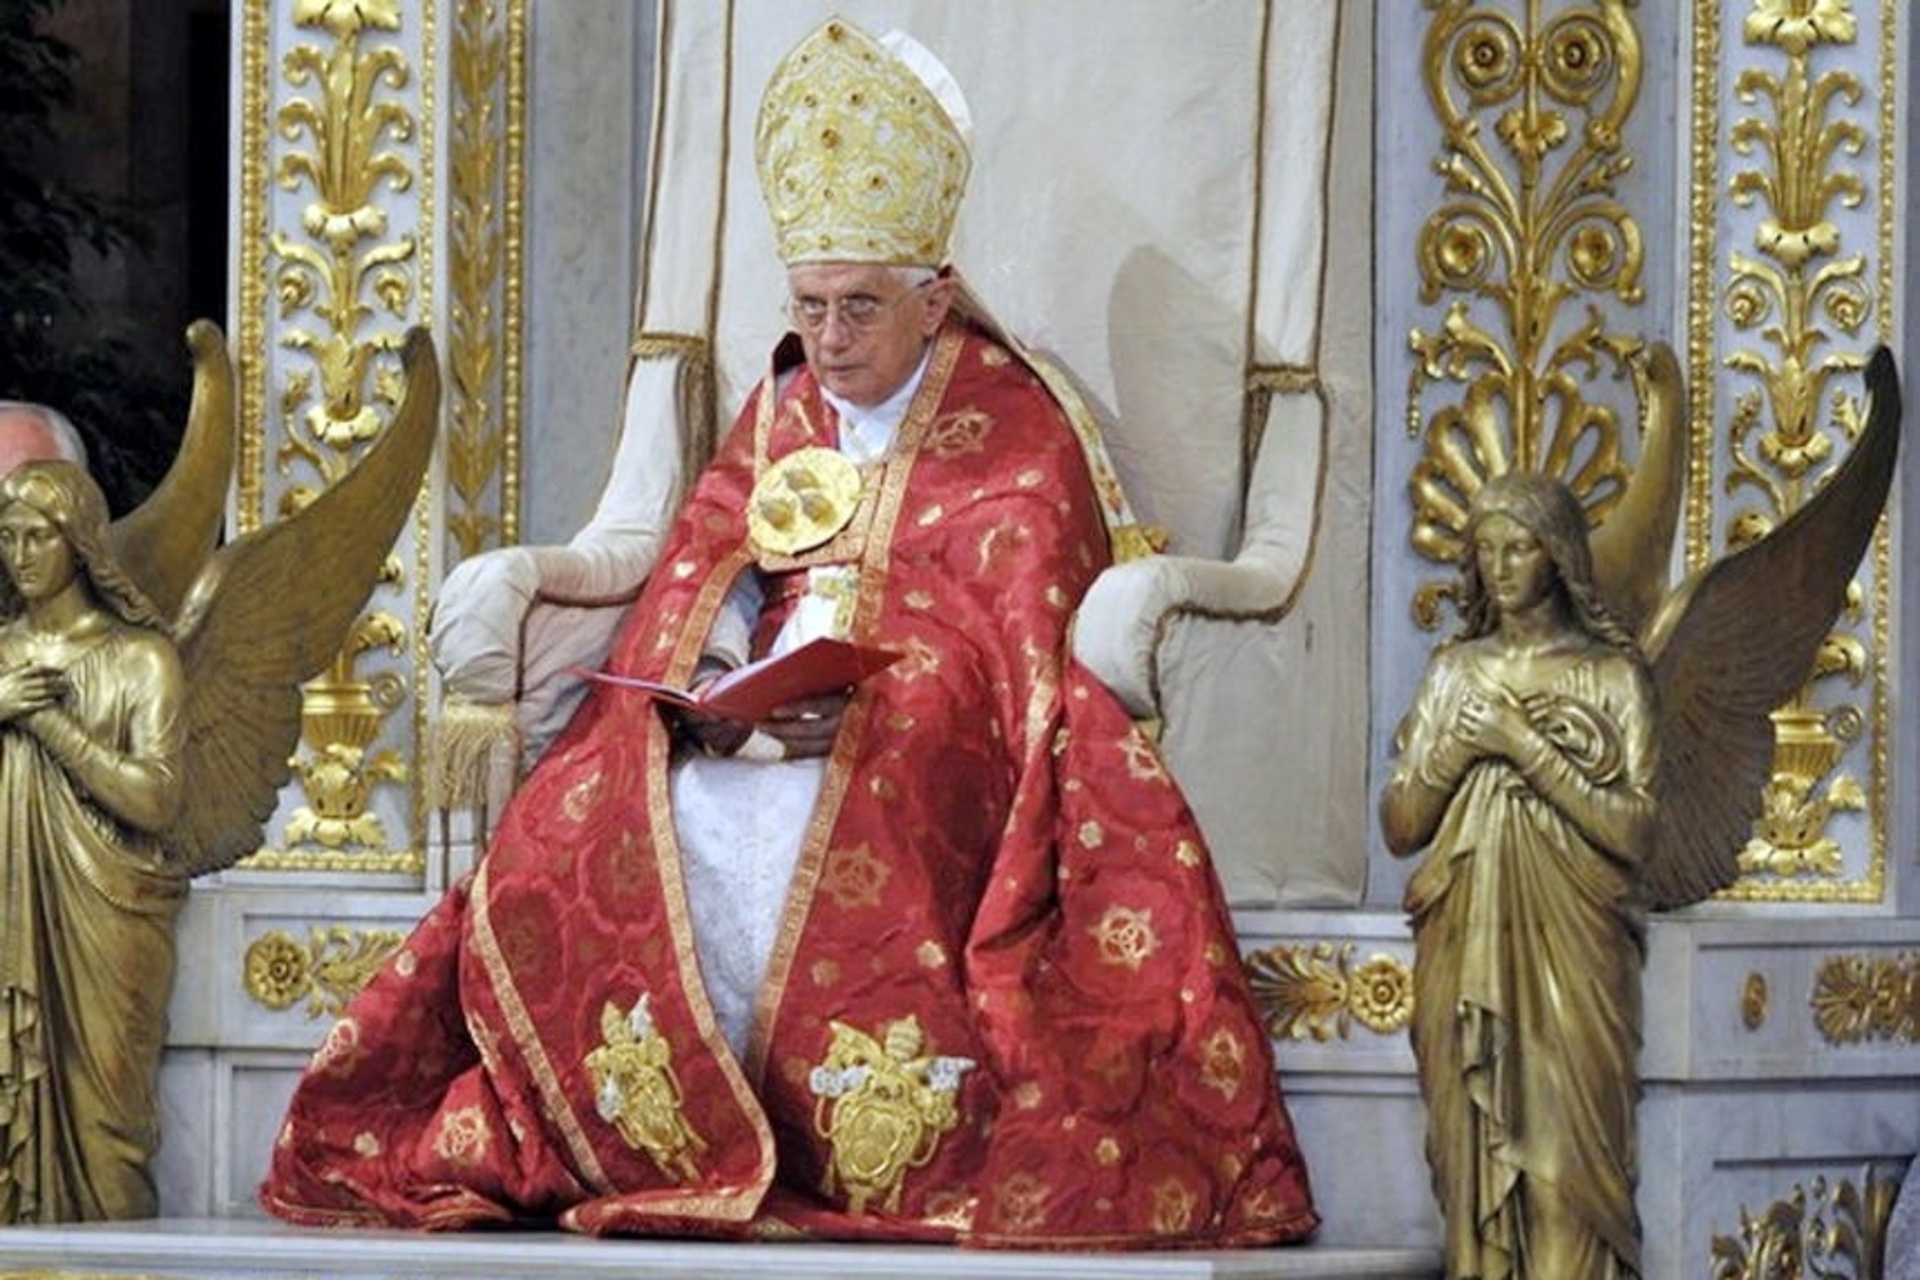 პაპი ბენედიქტ XVI: ბენედიქტ XVI, დაბადებული ჯოზეფ რაცინგერი, კათოლიკური ეკლესიის 265-ე პაპი და რომის ეპისკოპოსი, თავმჯდომარეობდა პავლეს წლის გახსნის ცერემონიას 29 წლის 2008 ივნისს.